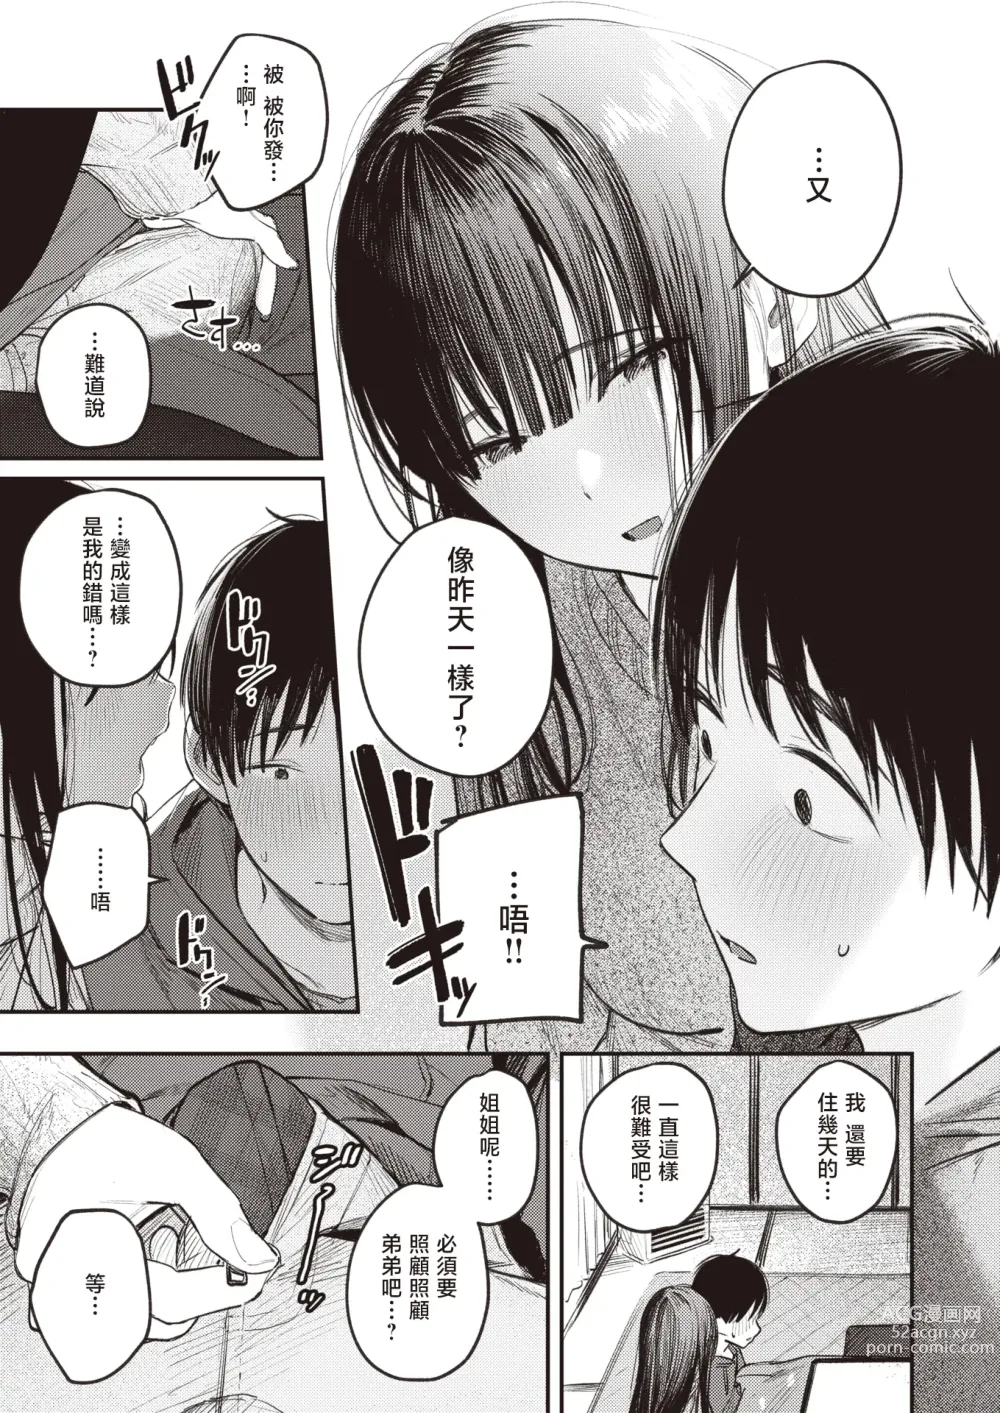 Page 10 of manga 直到雾释冰融